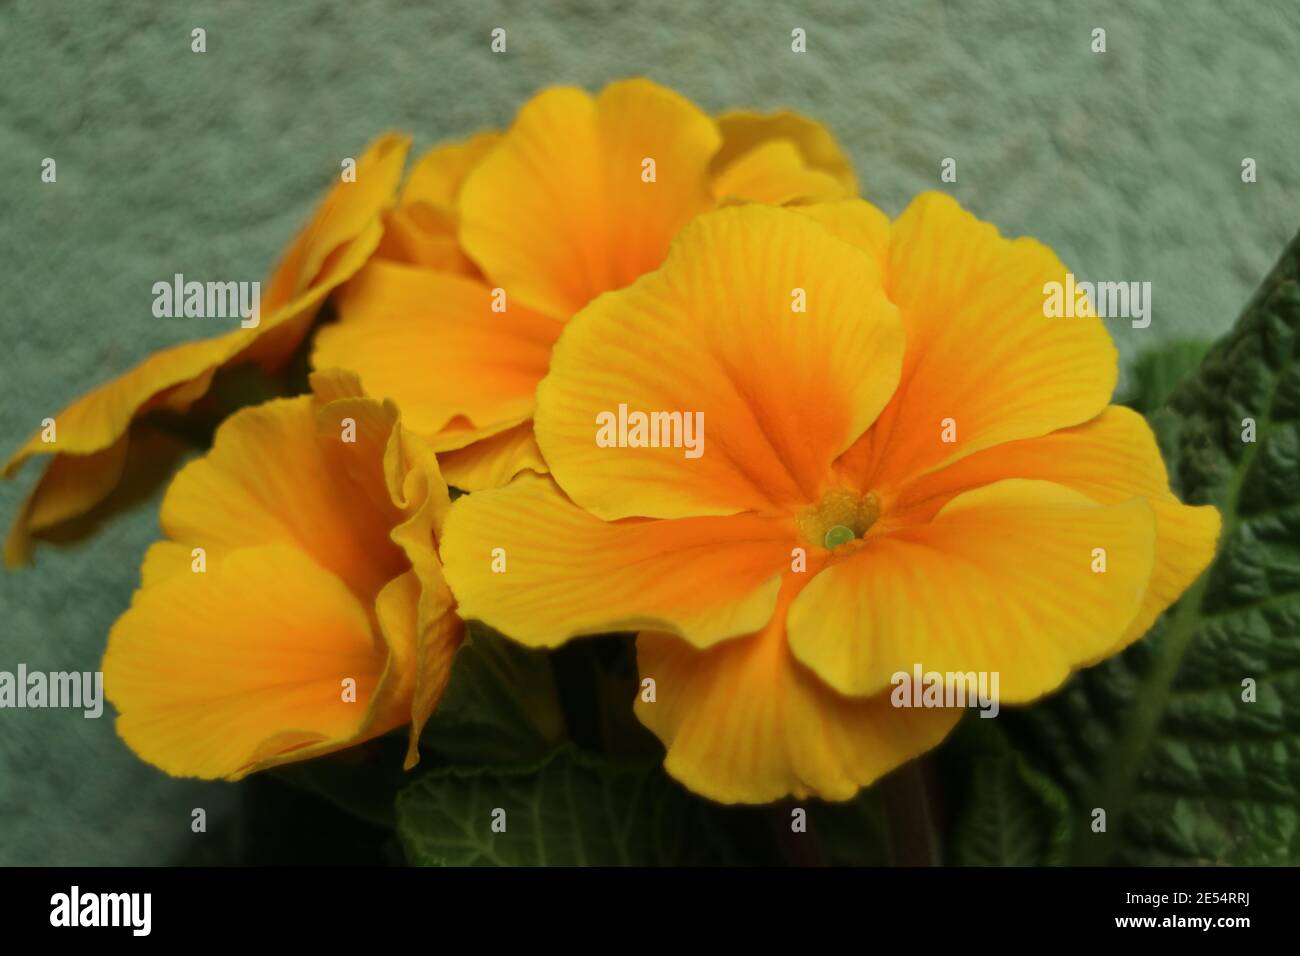 Primula avec des pétales jaunes - orange et des feuilles vertes, primula avec fond de mur vert macro, beauté dans la nature, photo florale, photographie macro Banque D'Images